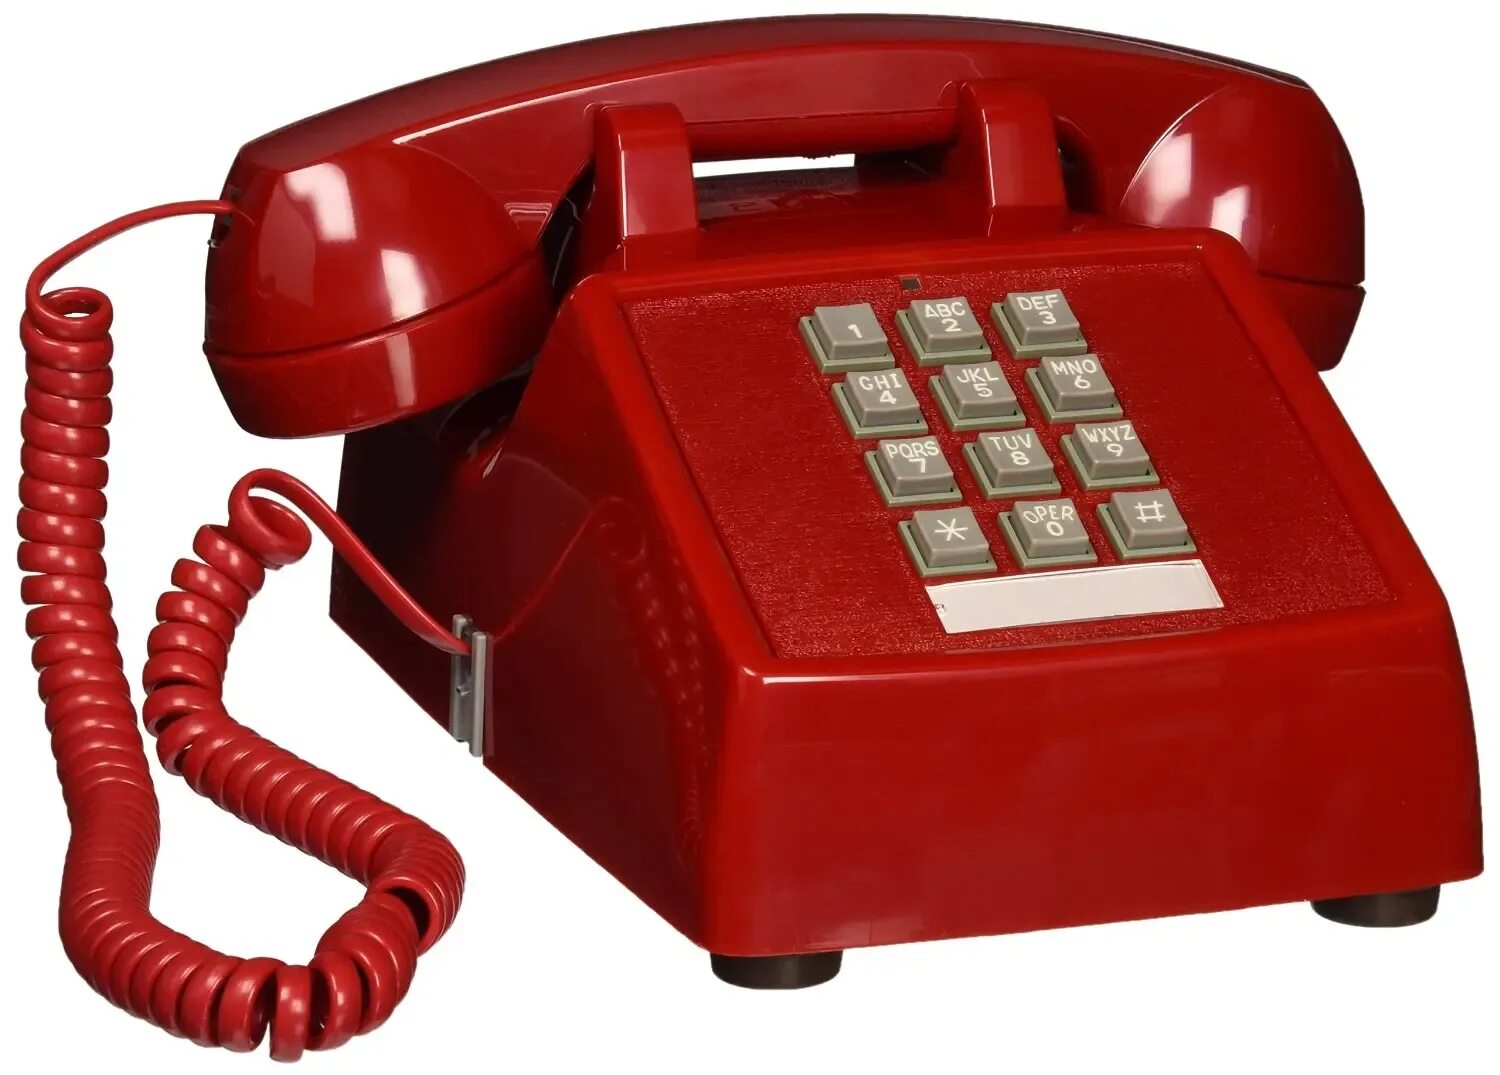 Телефонный аппарат. Стационарный телефон. Красный телефонный аппарат. Телефонная трубка. Картинки телефонных аппаратов